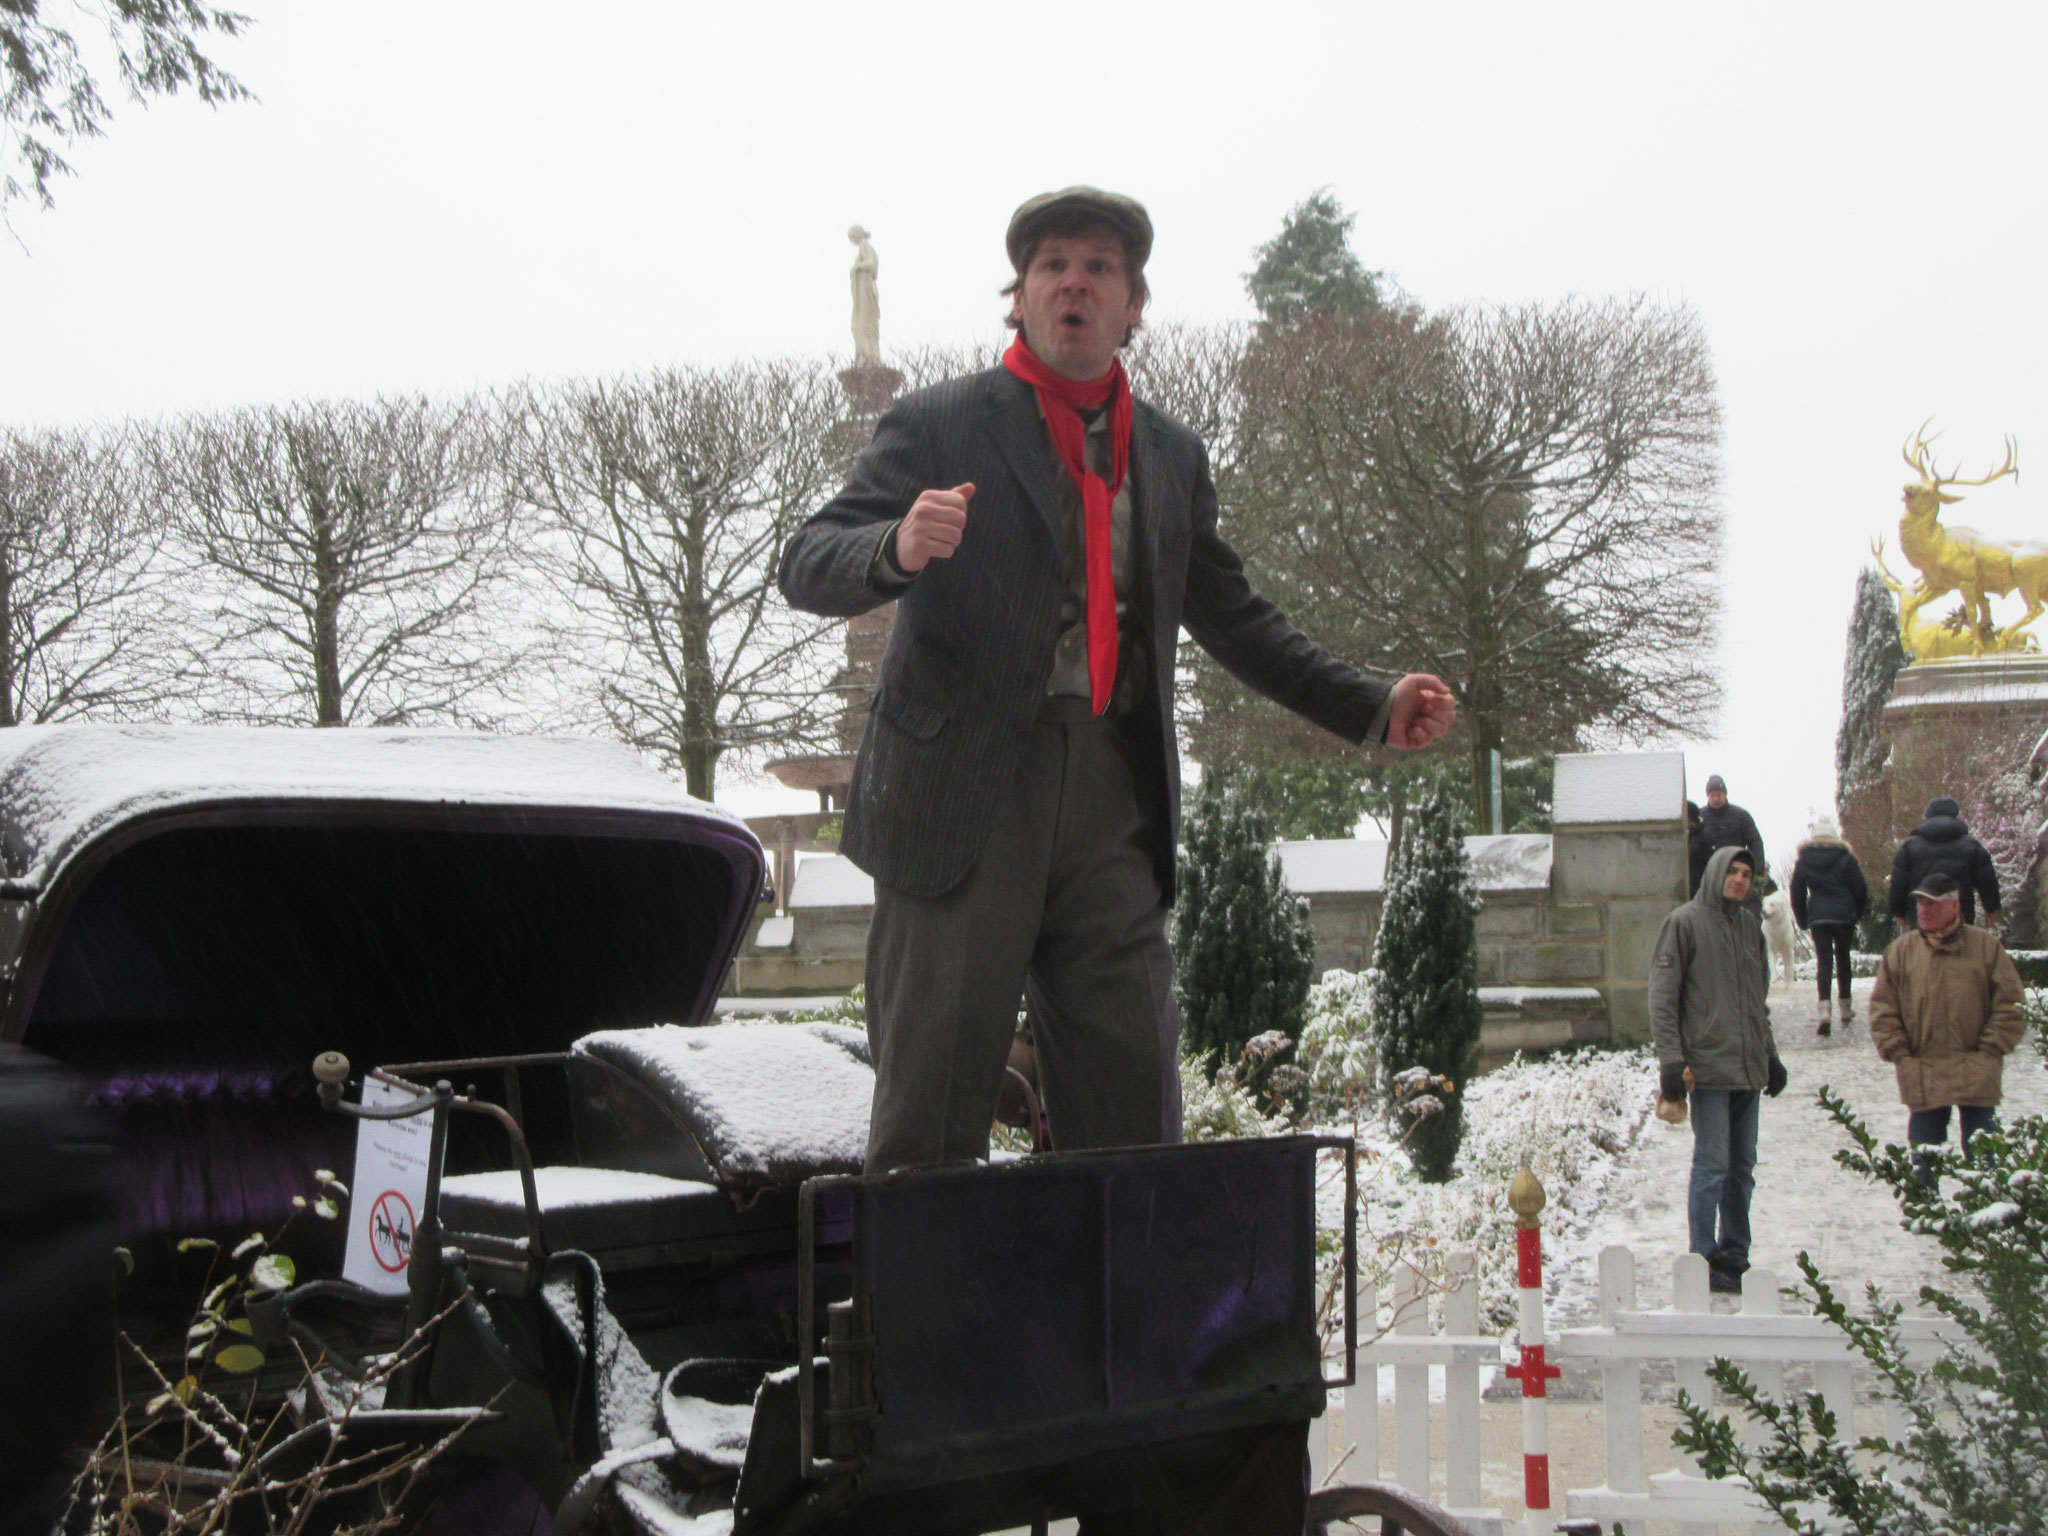 2017 Weihnachtsmarkt, Frühsozialist Robert Owen in Action